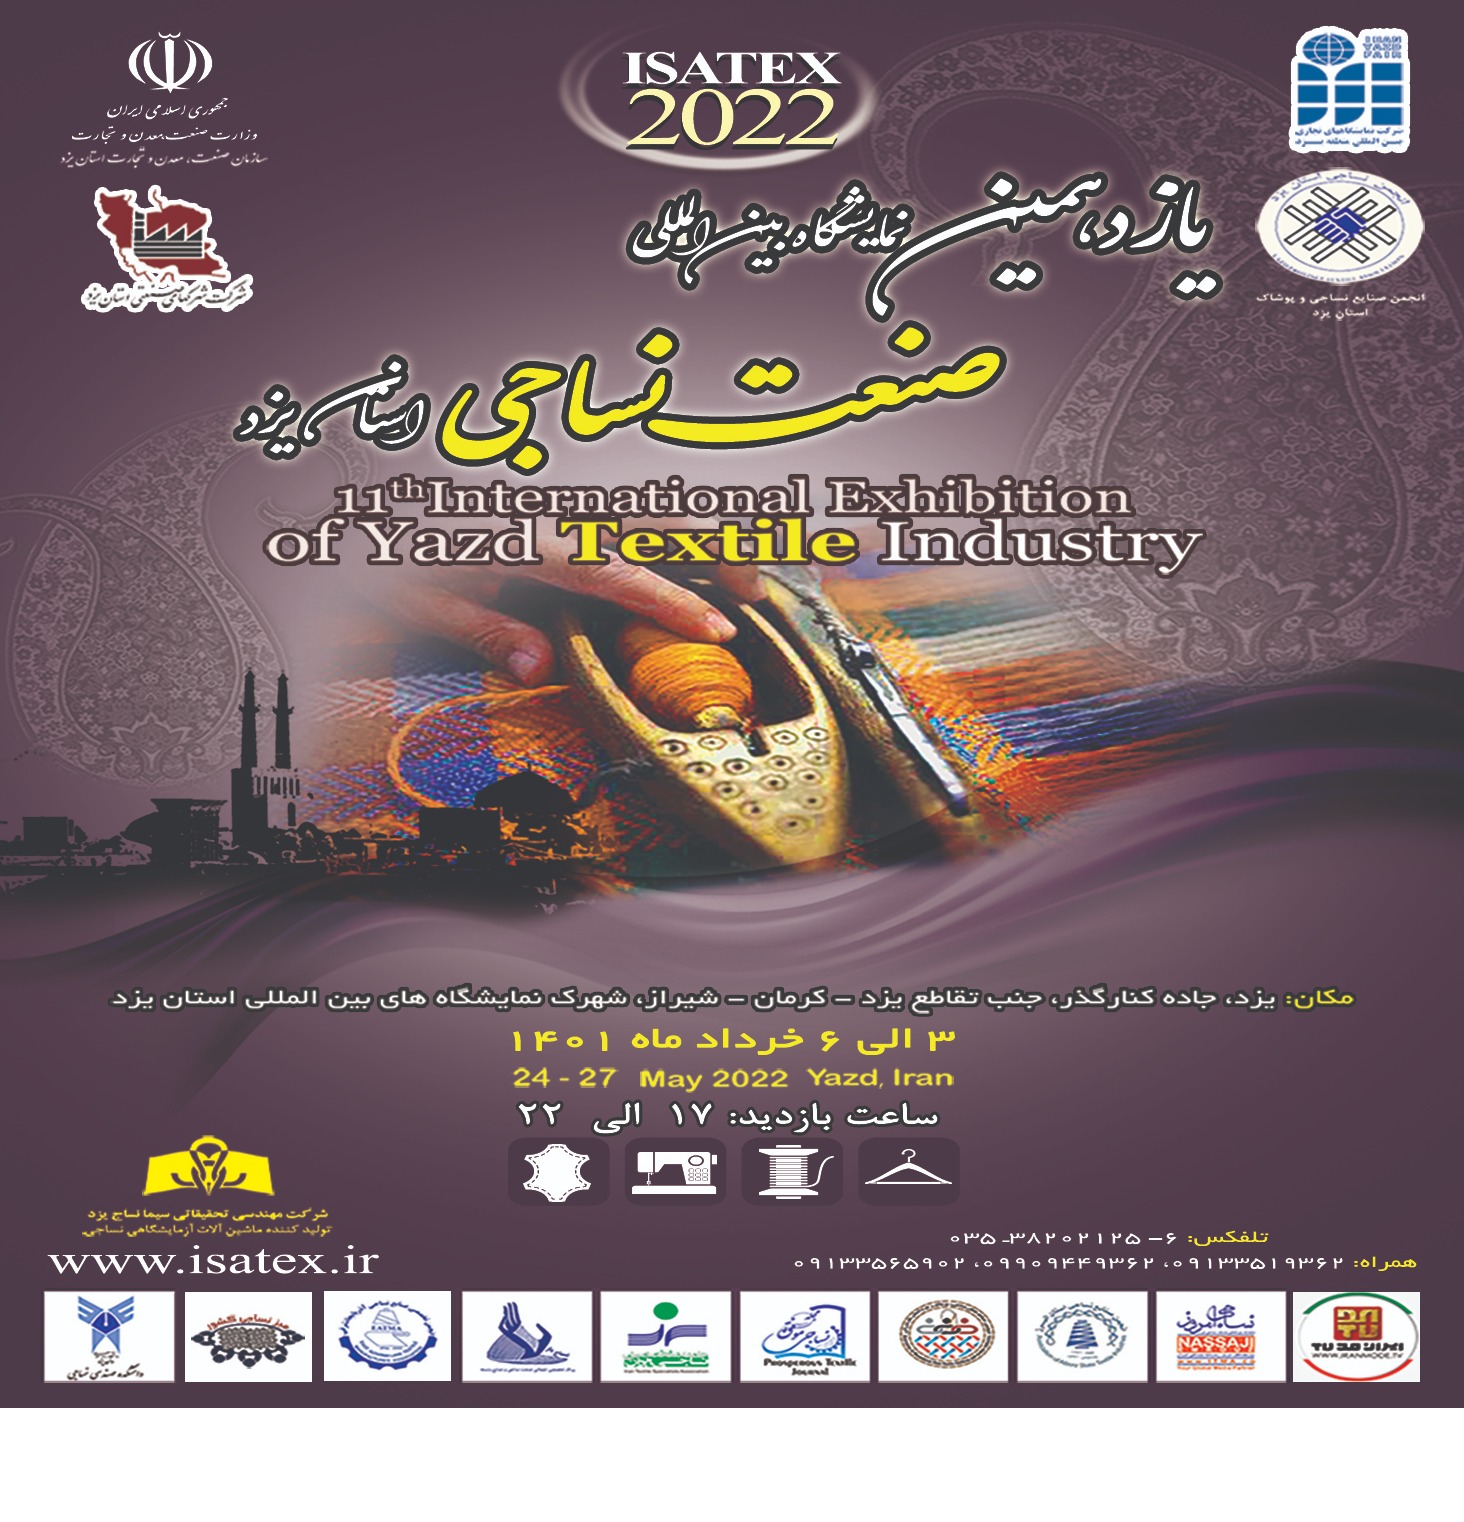 قطب صنعت نساجی ایران، میزبان یازدهمین نمایشگاه نساجی 